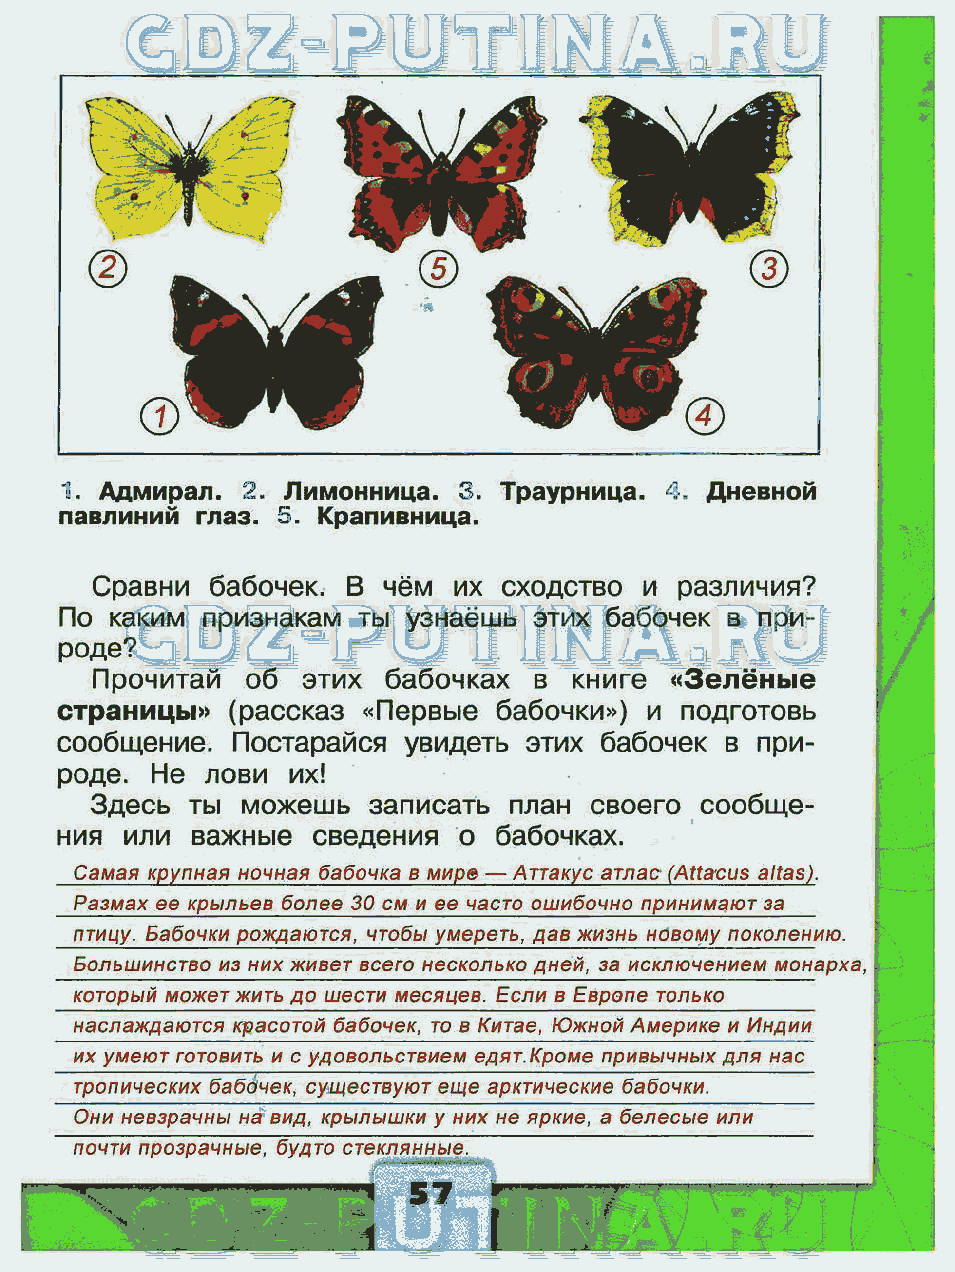 В чем сходство и различие бабочек